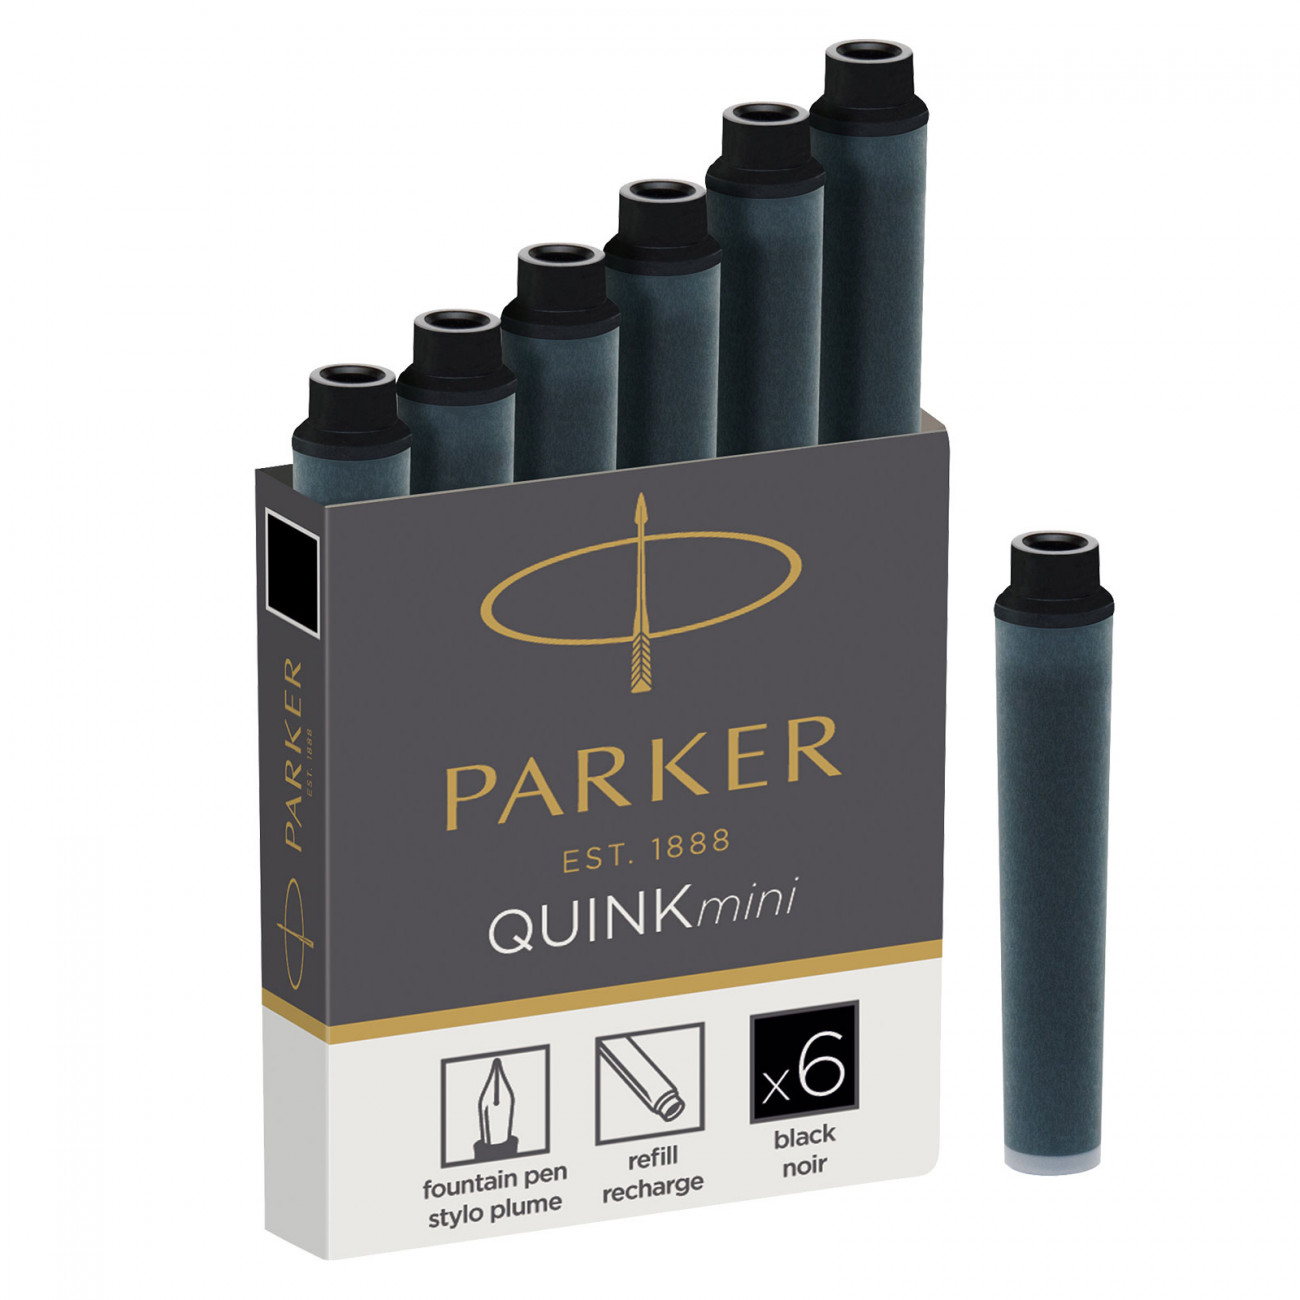 Картриджи чернильные Mini для перьевых ручек Parker черные, 6 шт в упаковке